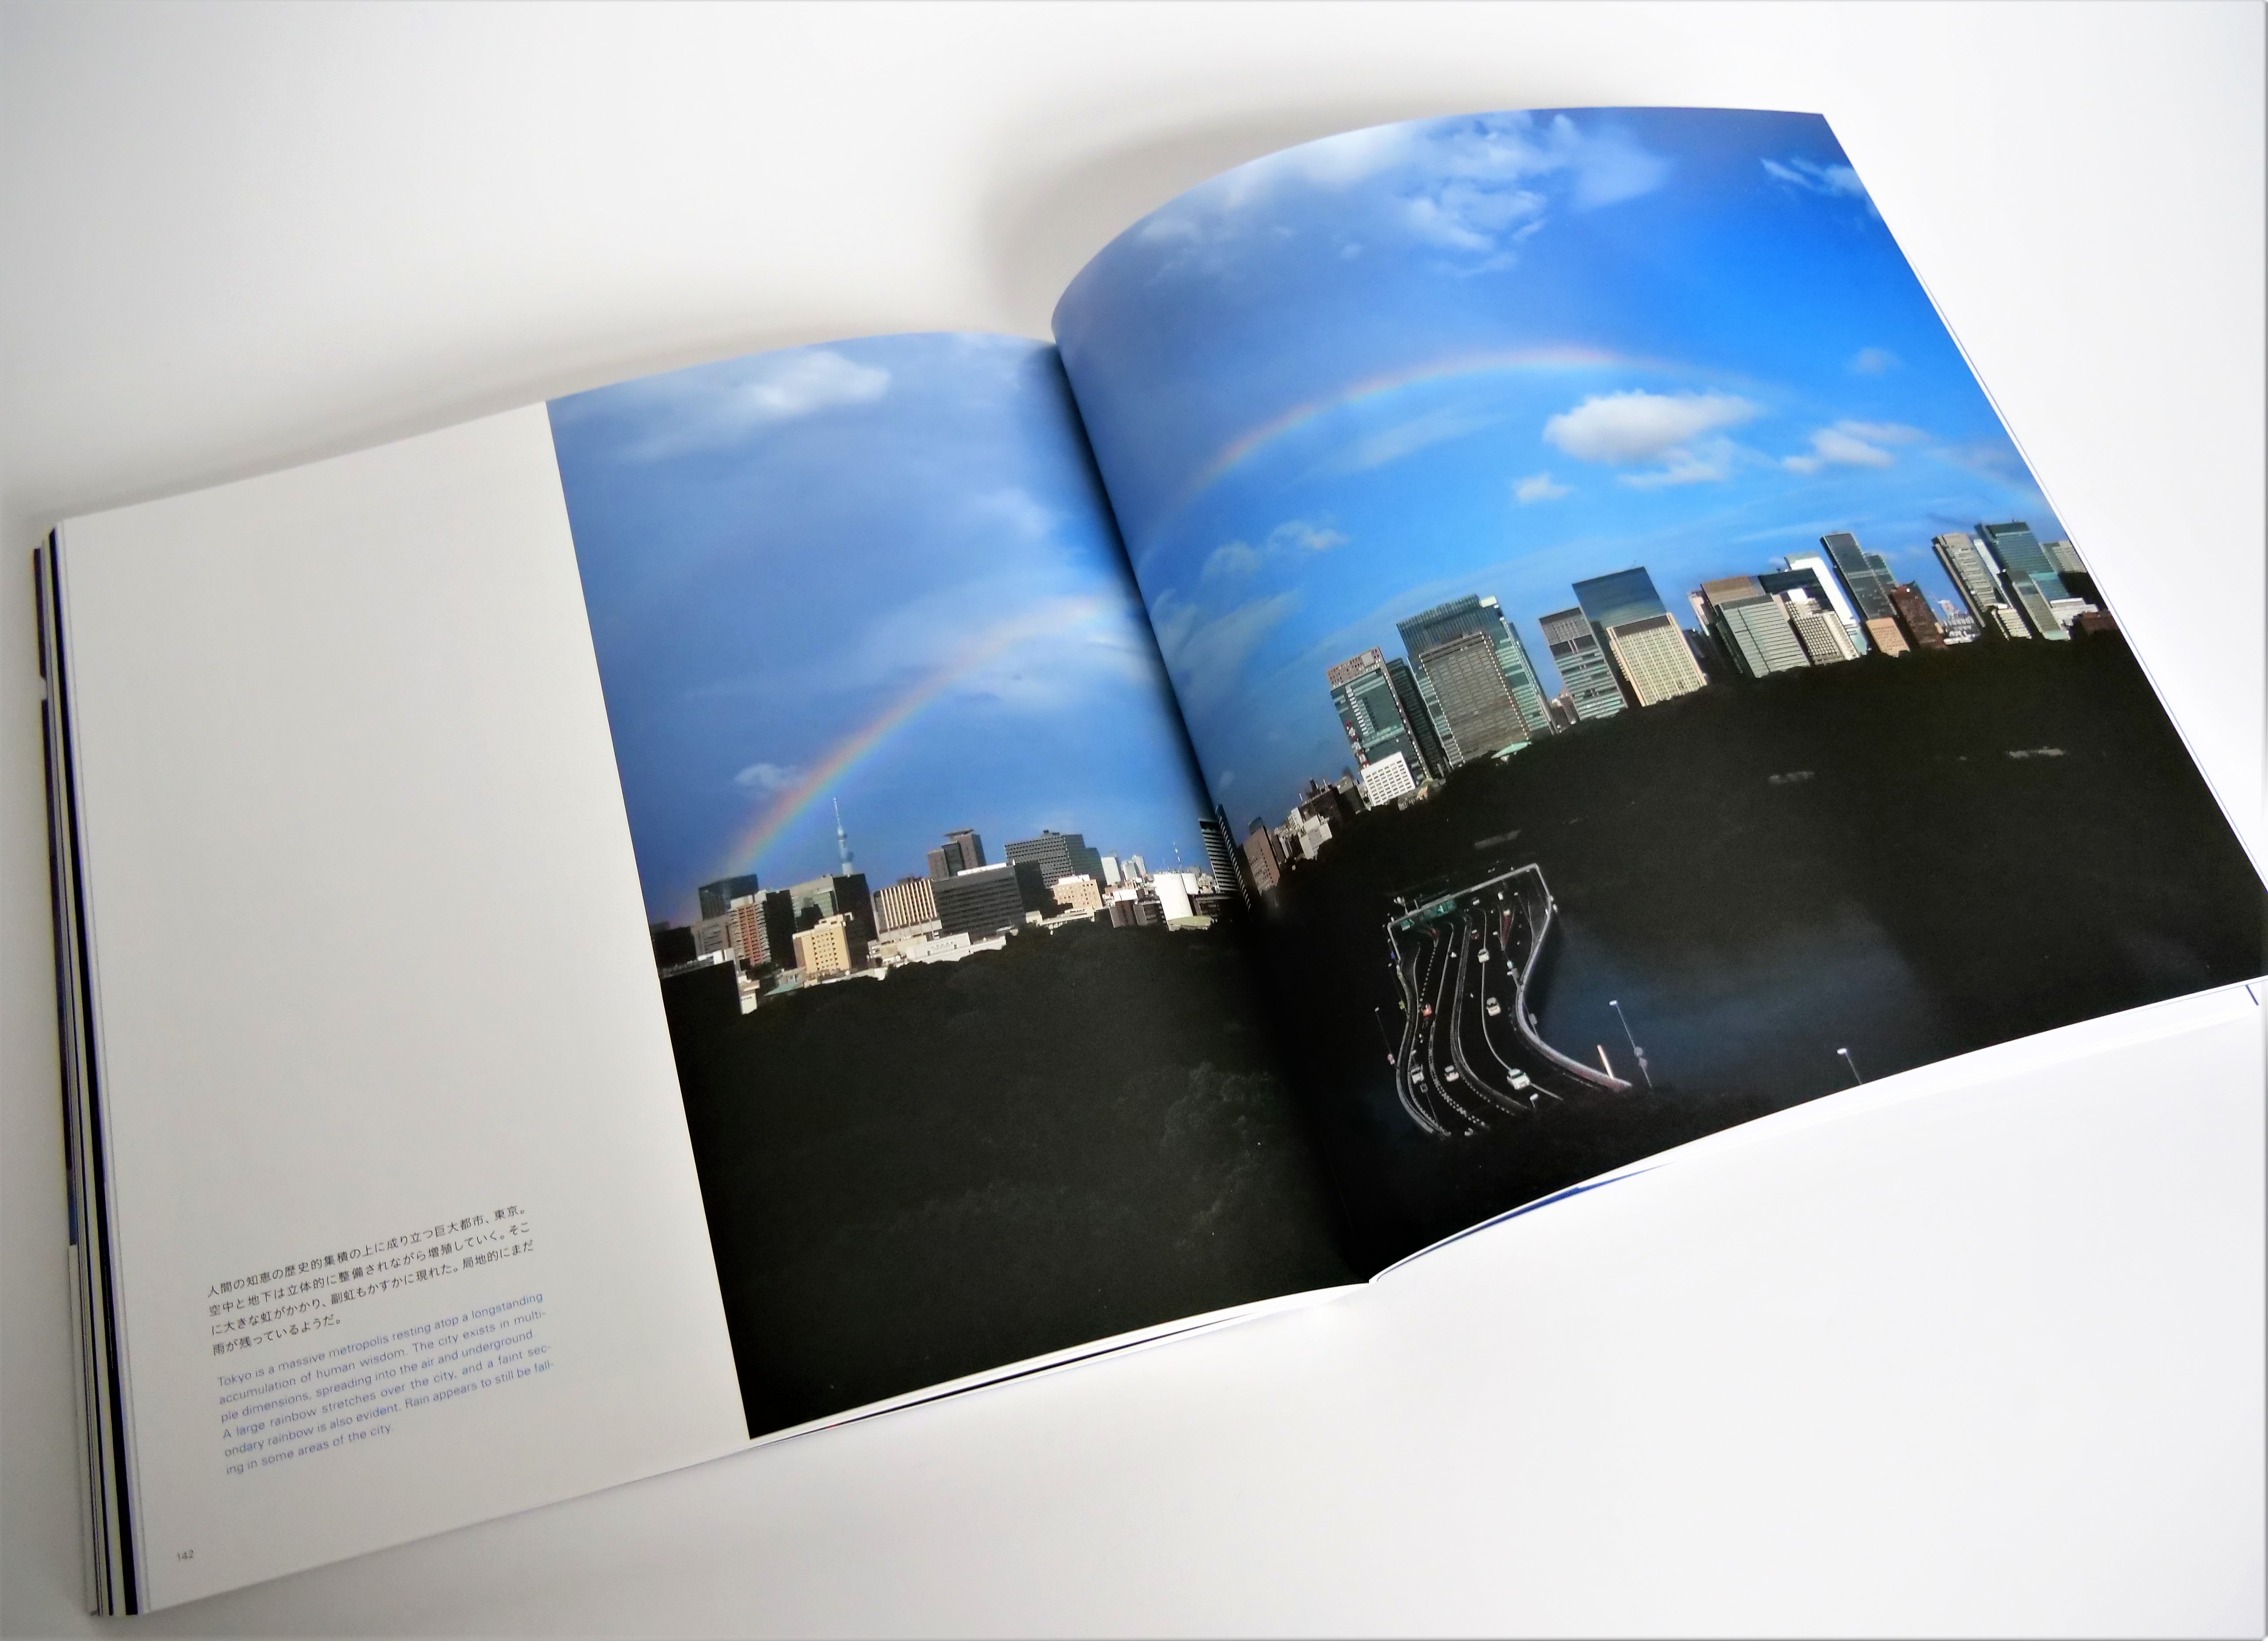 現実と非現実の境を漂い、変幻する都市をあぶり出す…現代社会を見事にとらえた写真集 - 東京印書館 | 写真集・展覧会図録・絵本・その他印刷物の企画制作|  TOKYO INSHOKAN PRINTING CO.